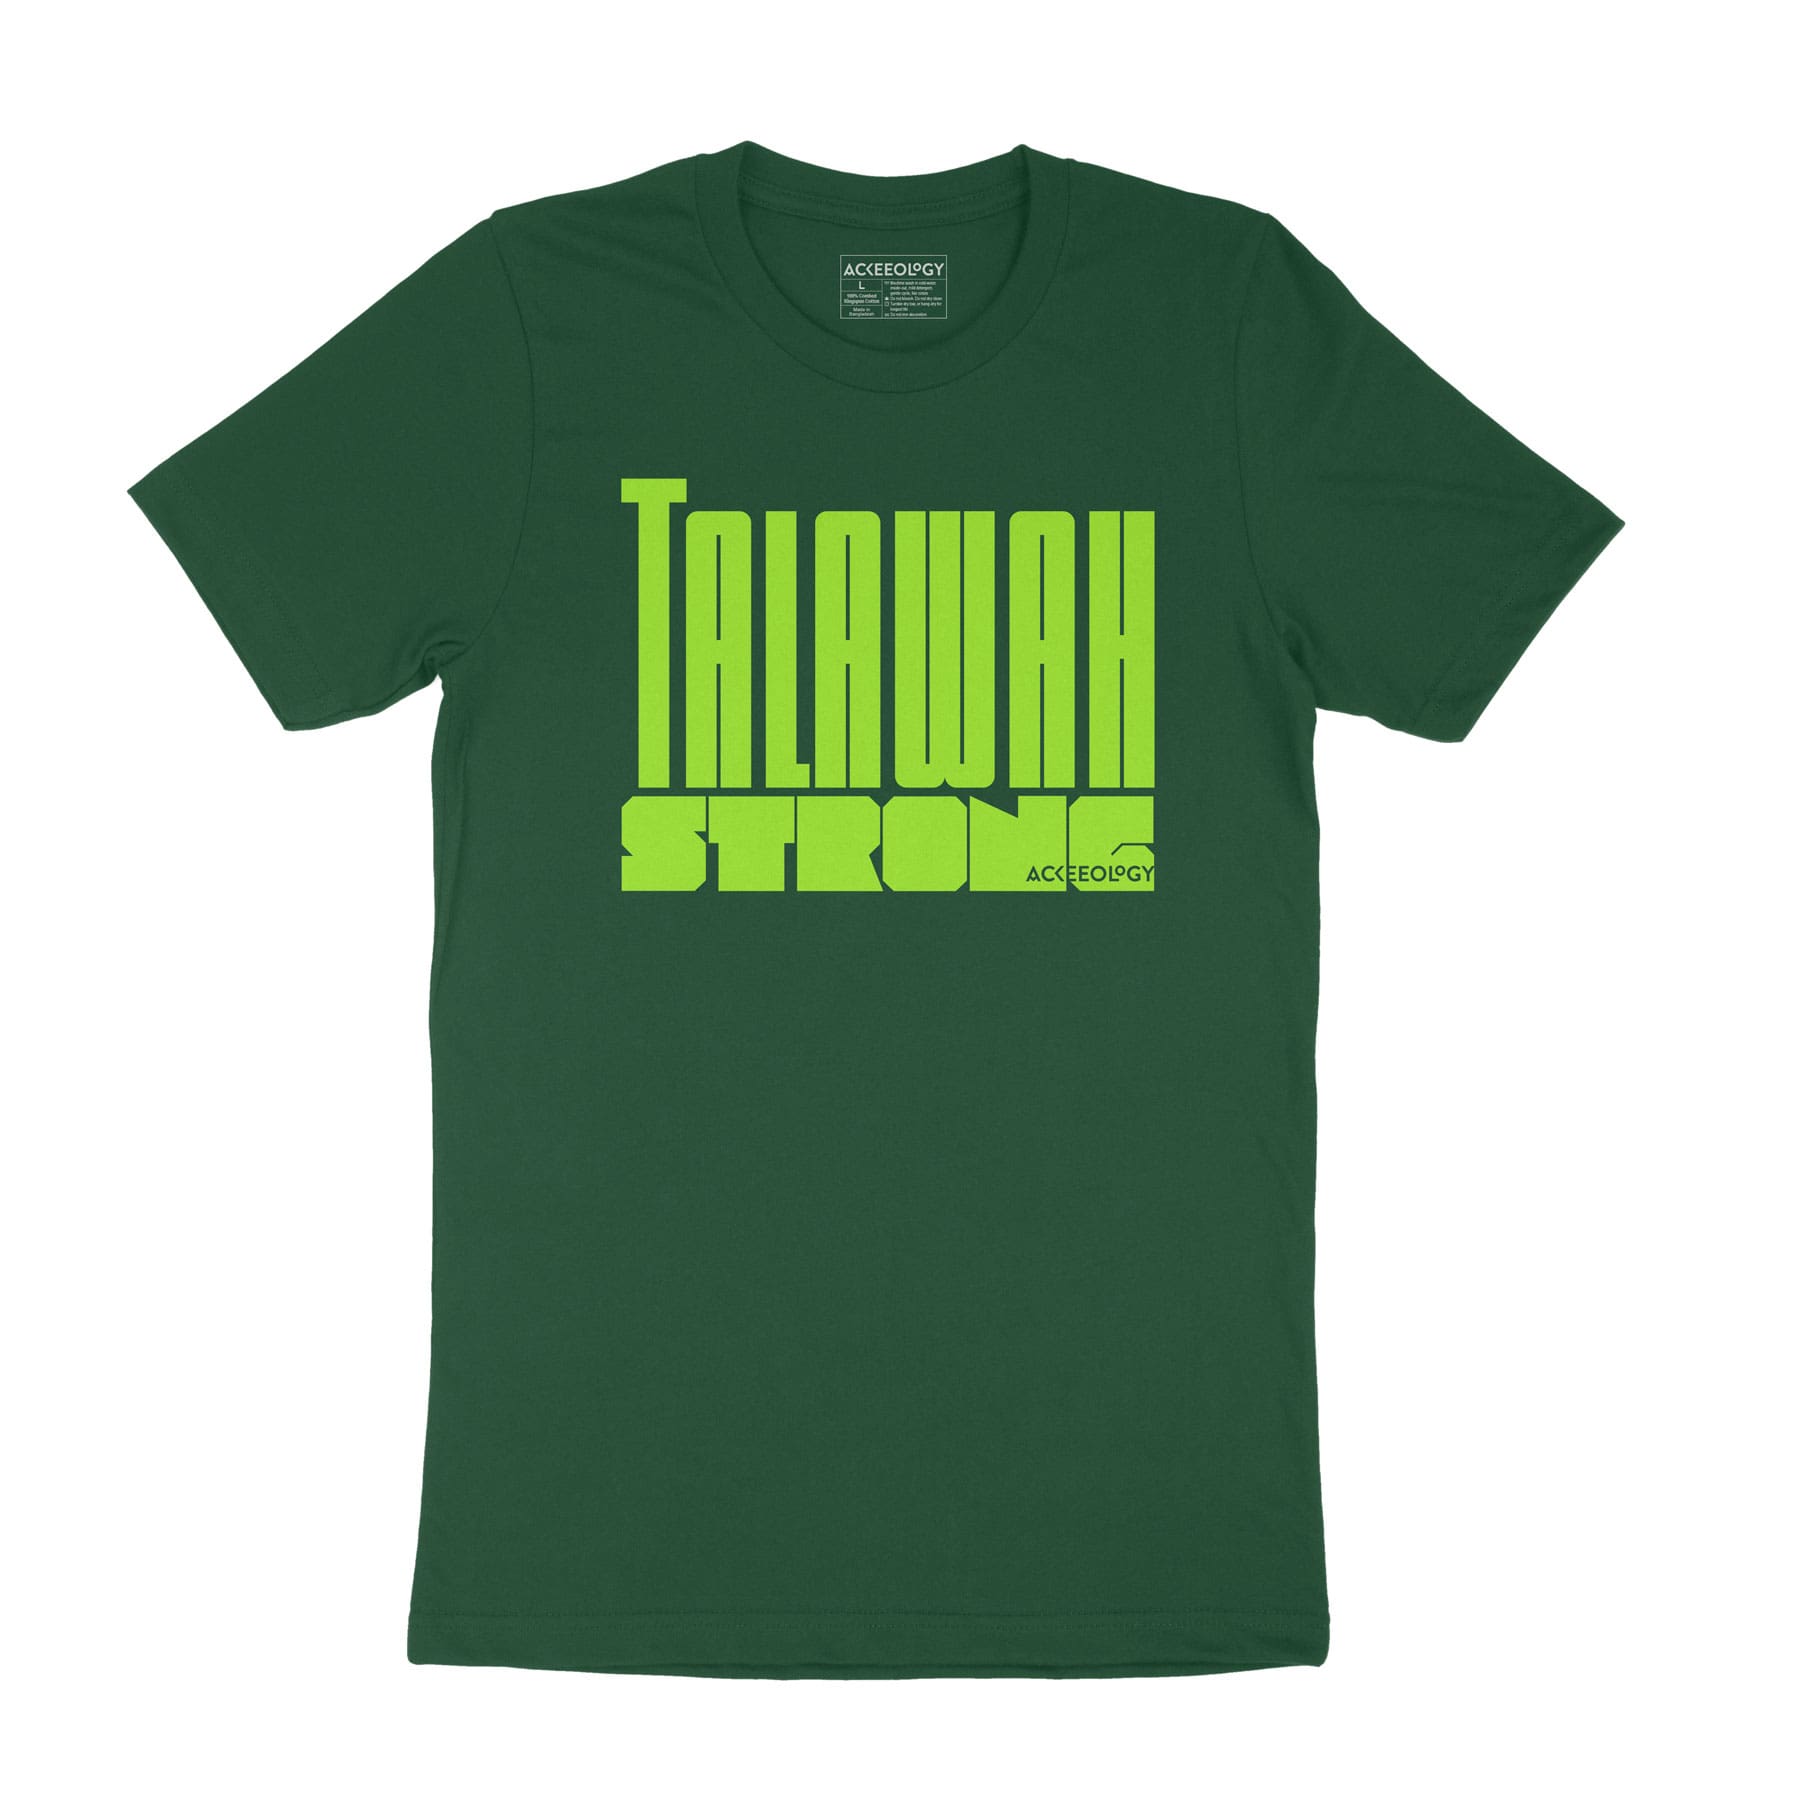 Talawah Strong t-shirt - forest green